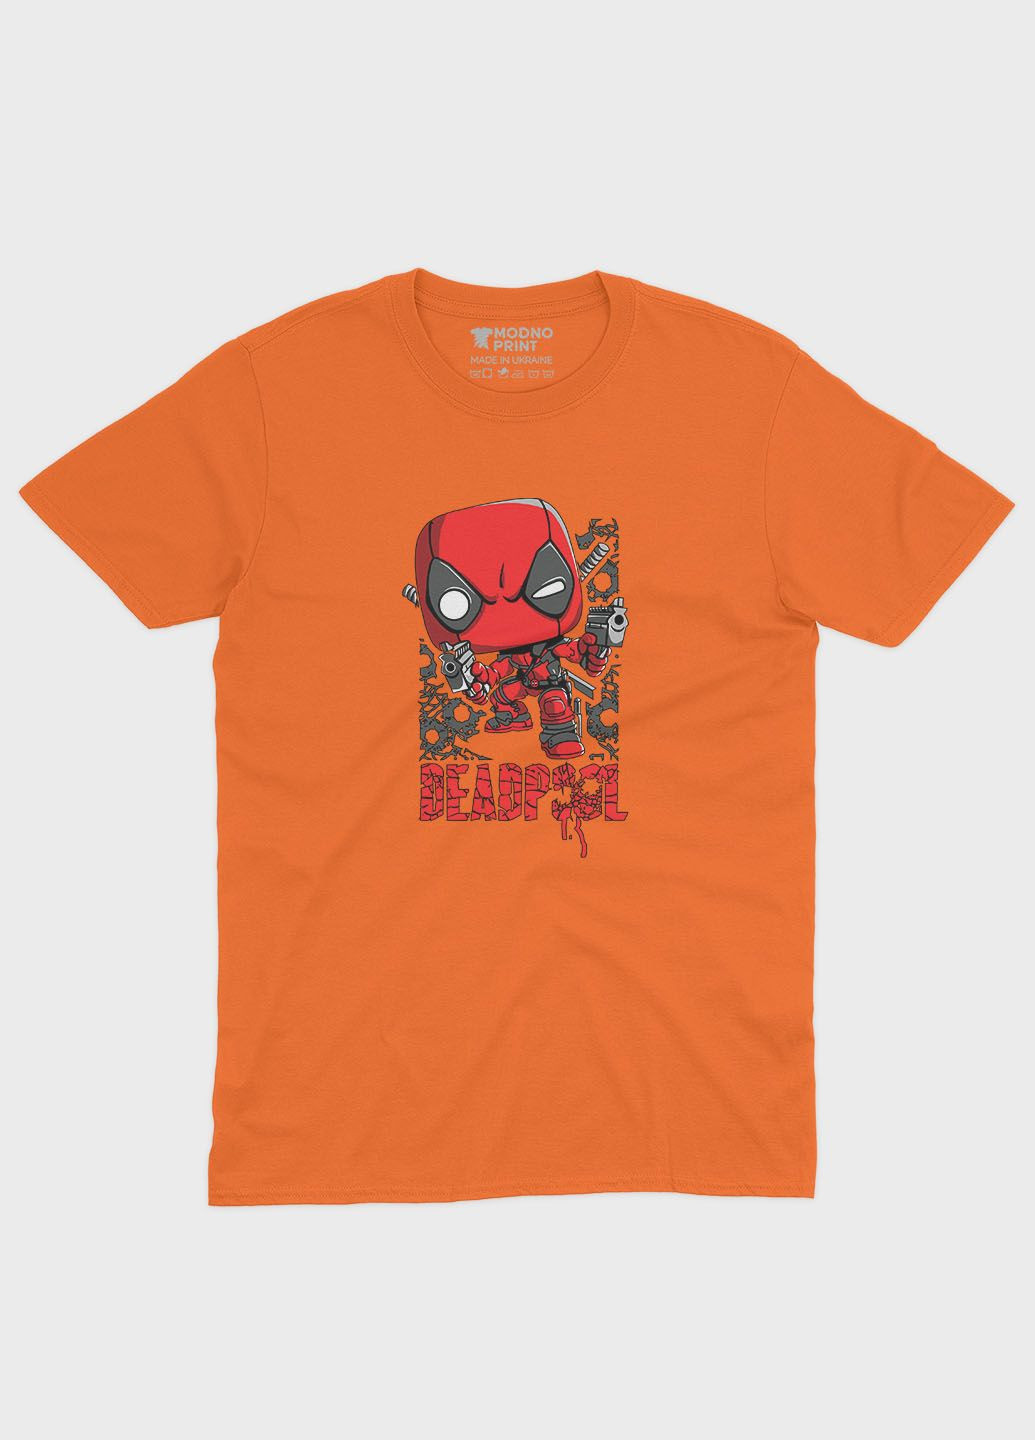 Оранжевая демисезонная футболка для девочки с принтом антигероя - дедпул (ts001-1-ora-006-015-009-g) Modno